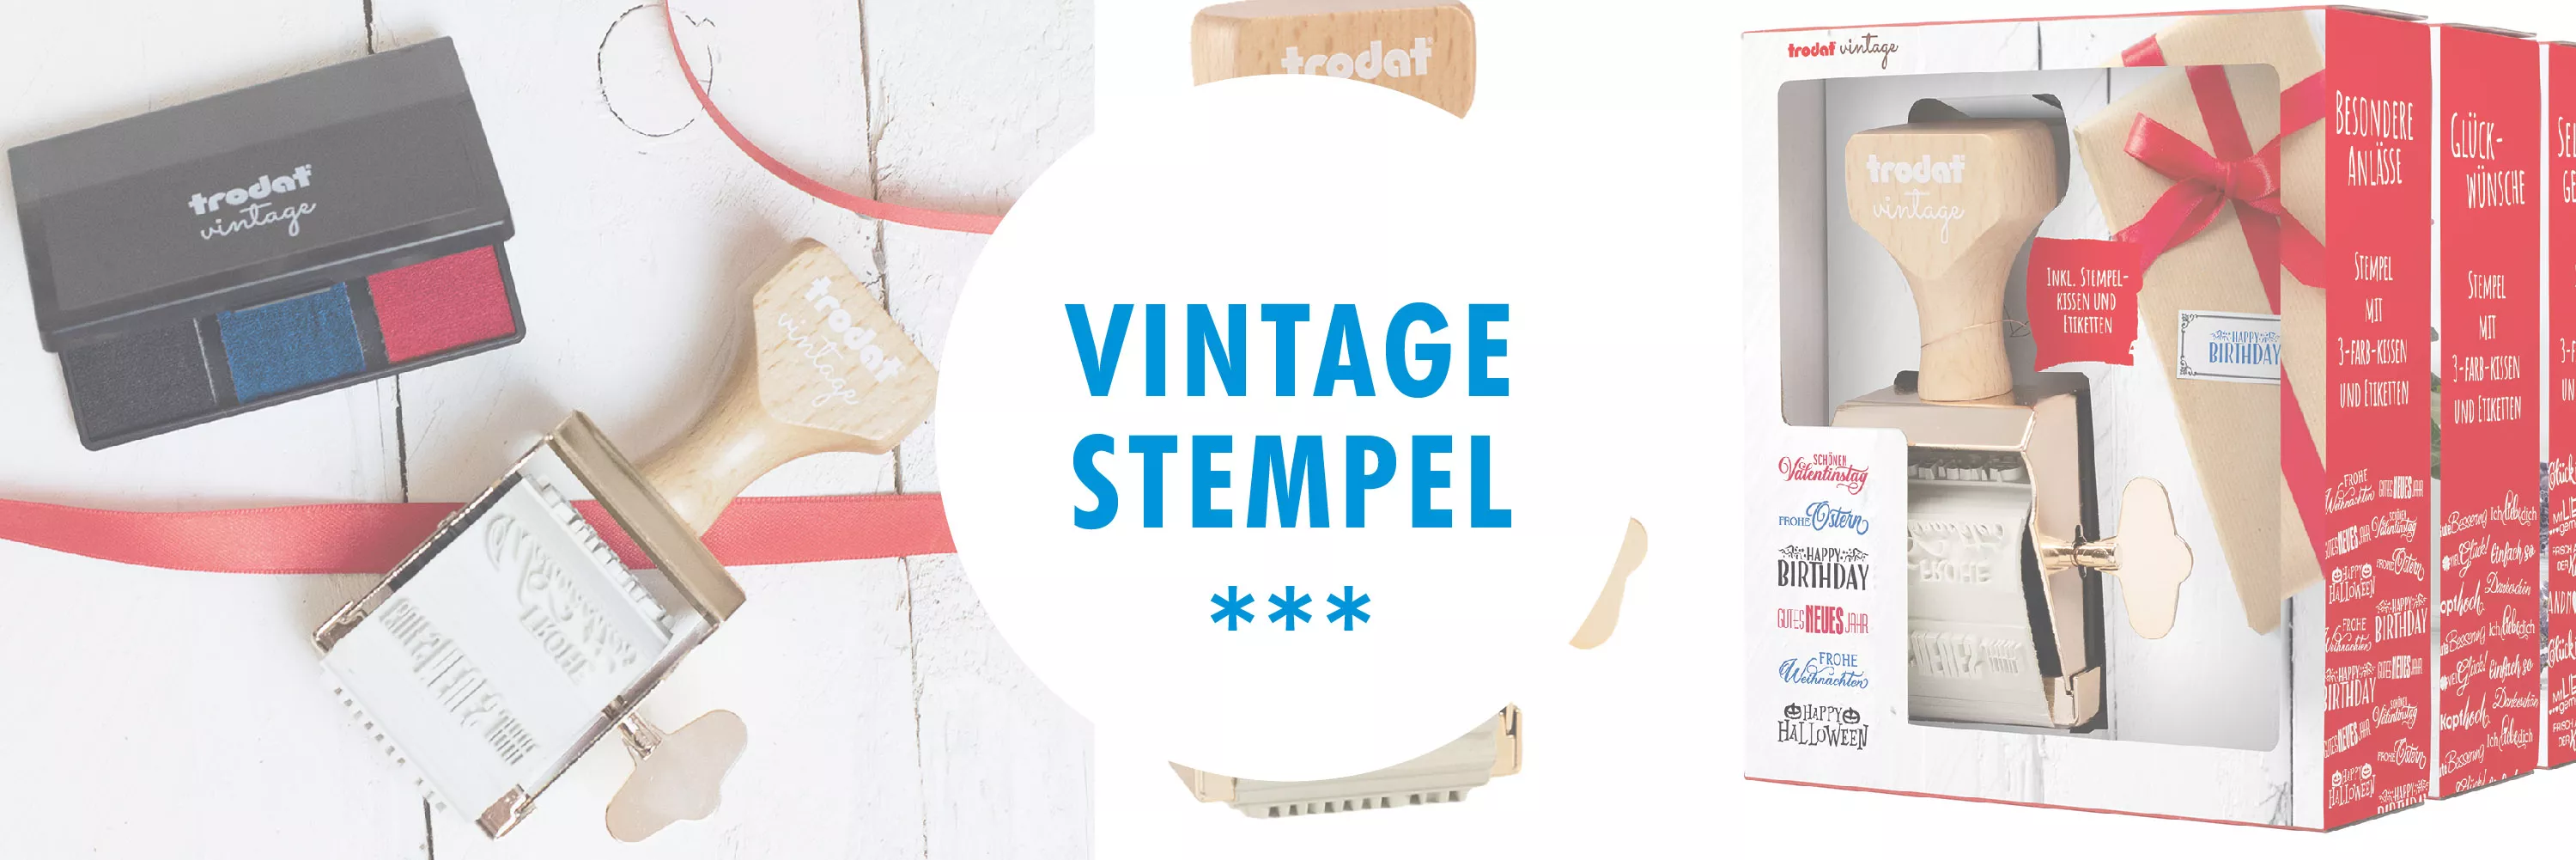 Vintage Stempel der Marke Trodat für Handmade Produkte ideal